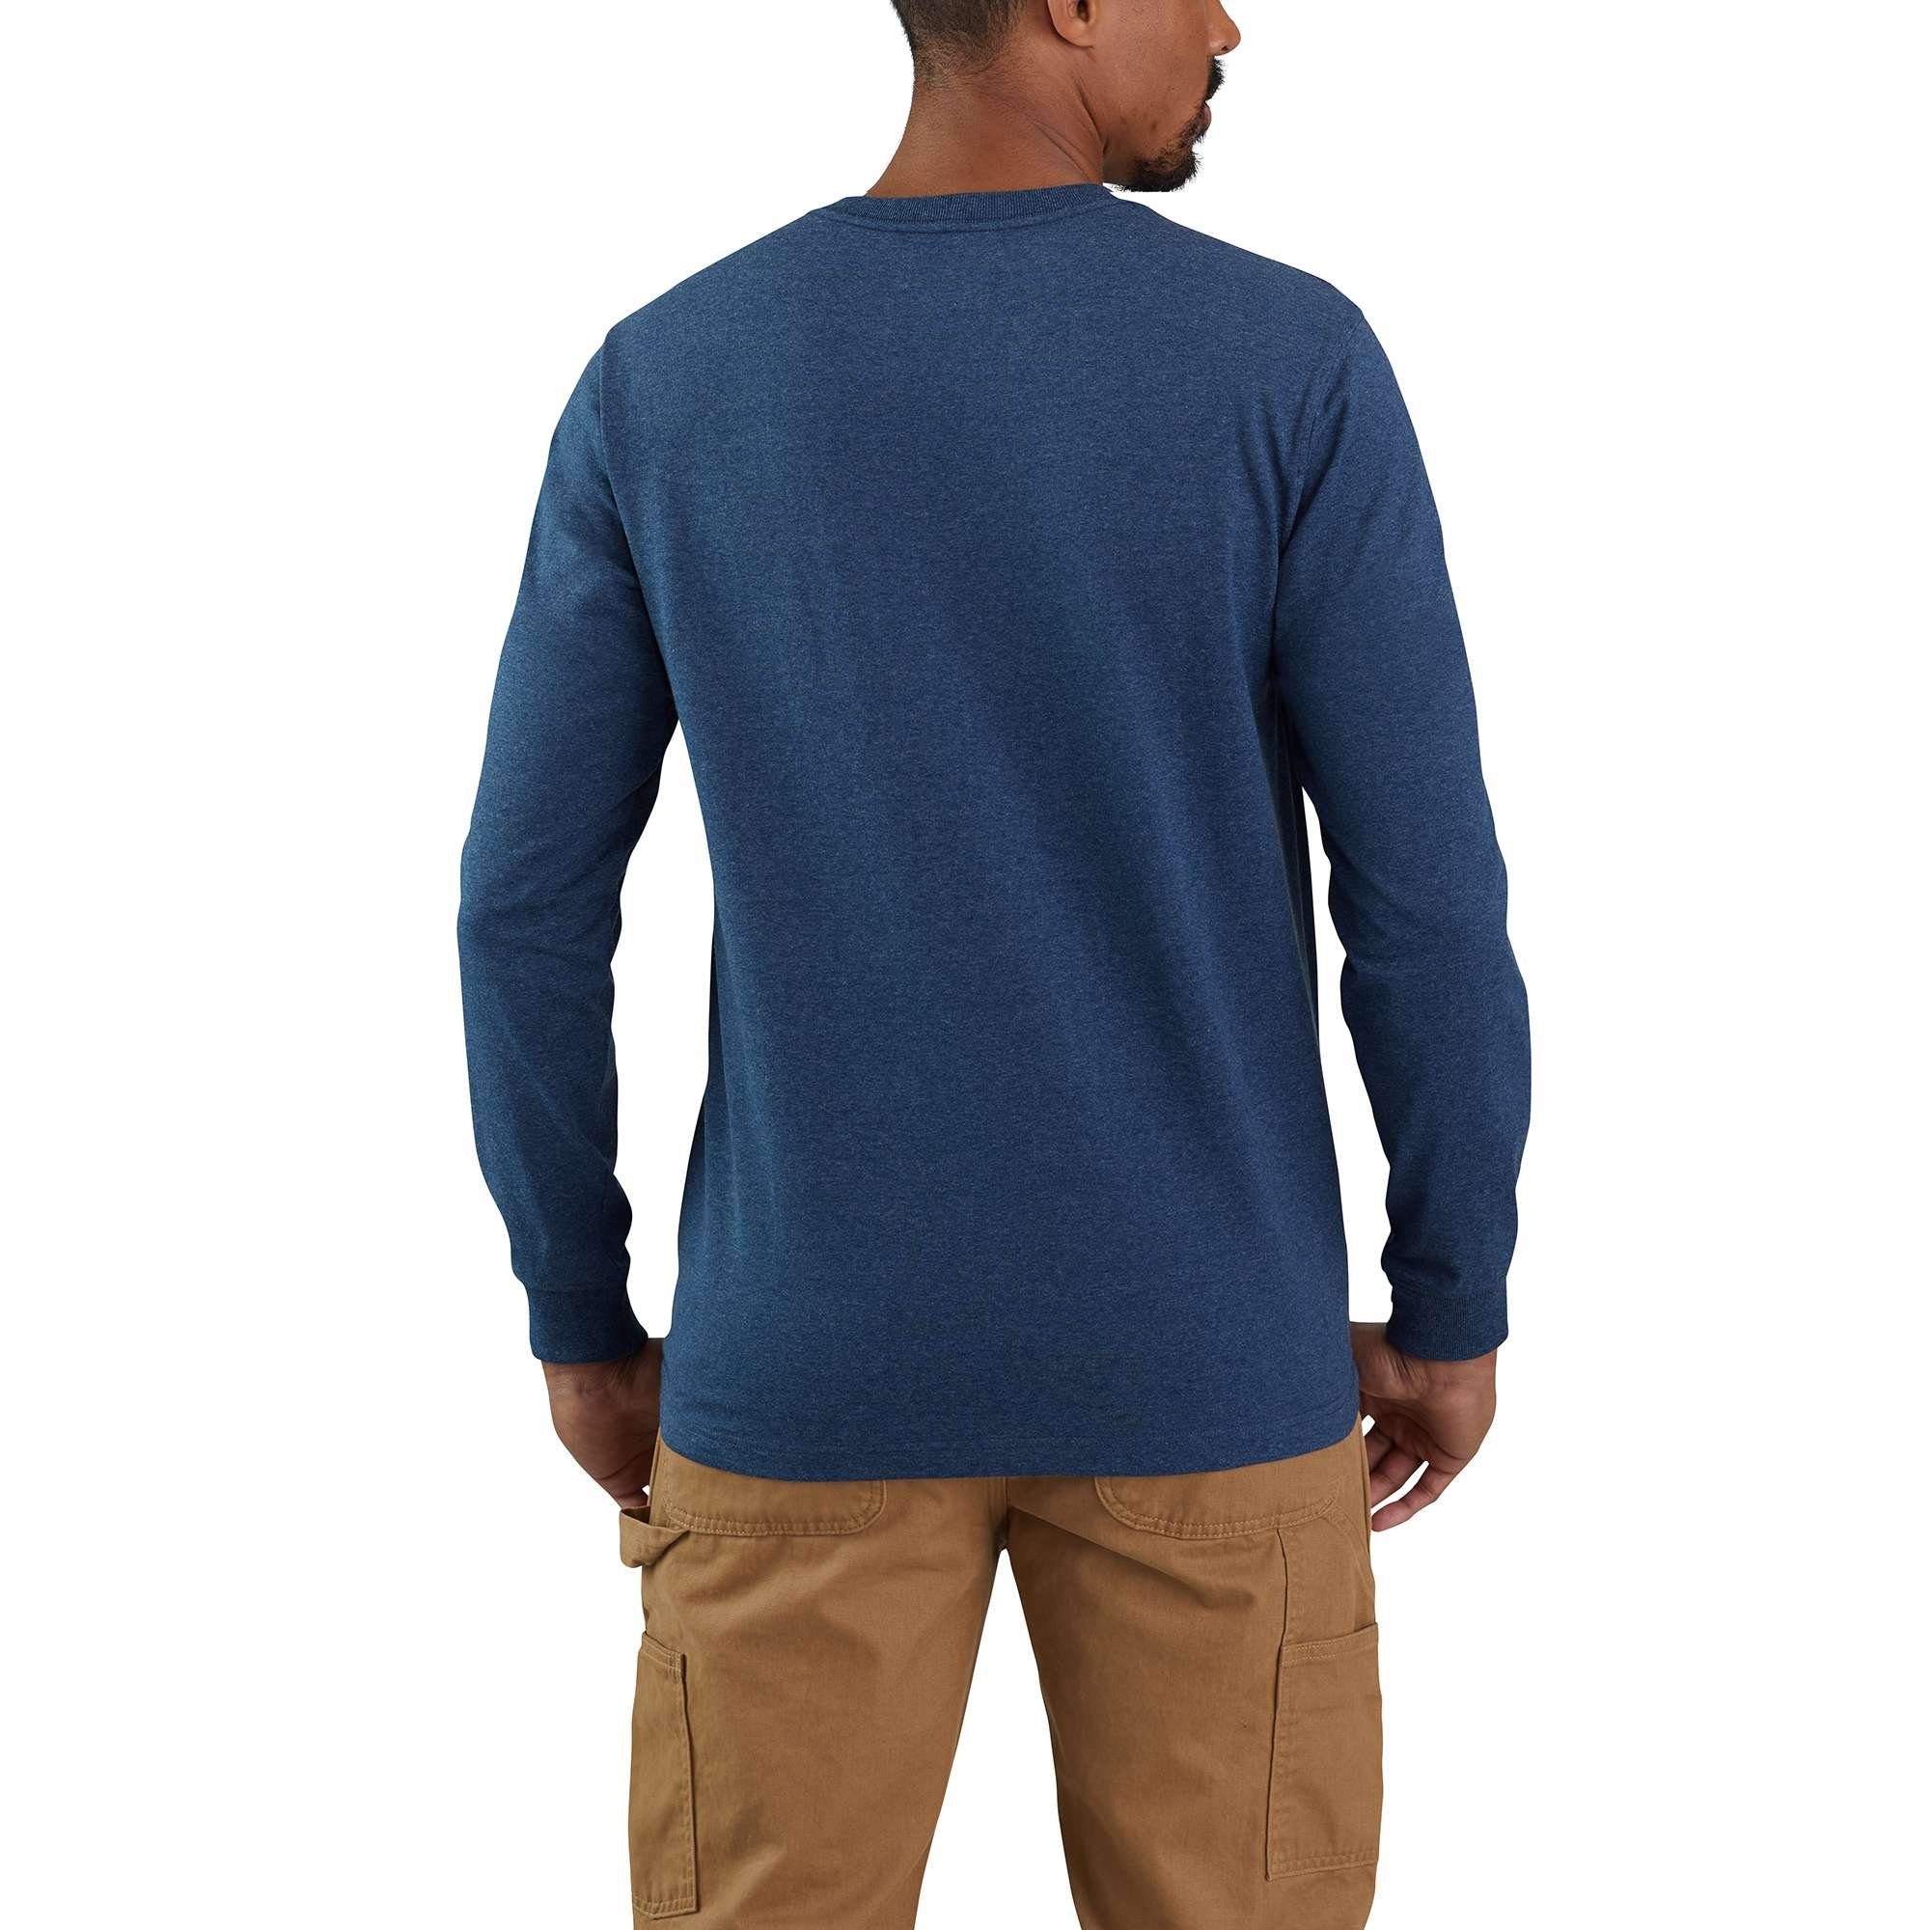 Carhartt Logo cobalt Carhartt Relaxed Heavyweight Adult Herren Langarmshirt blue Graphic T-Shirt Fit heather Long-Sleeve Block dark Langarmshirt